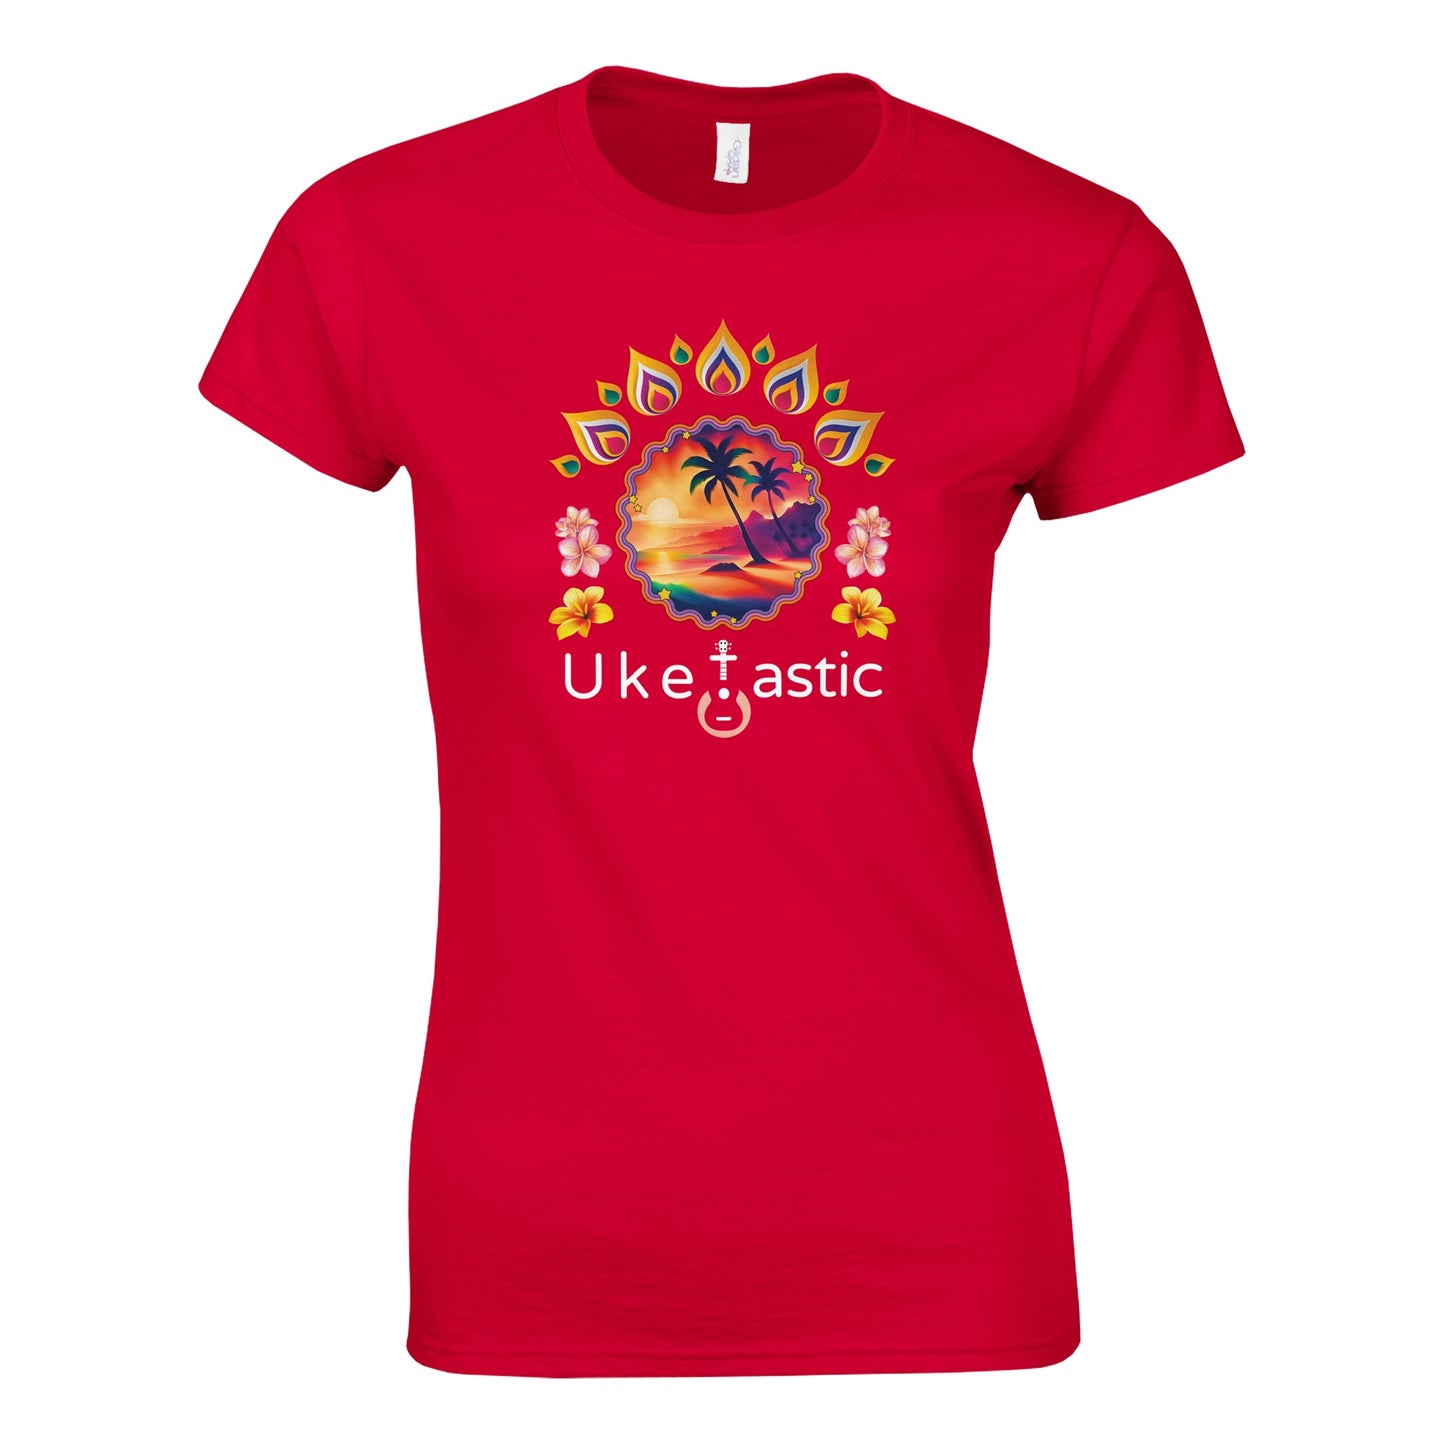 Women’s-sunset-ukulele-tshirt-1-redfront